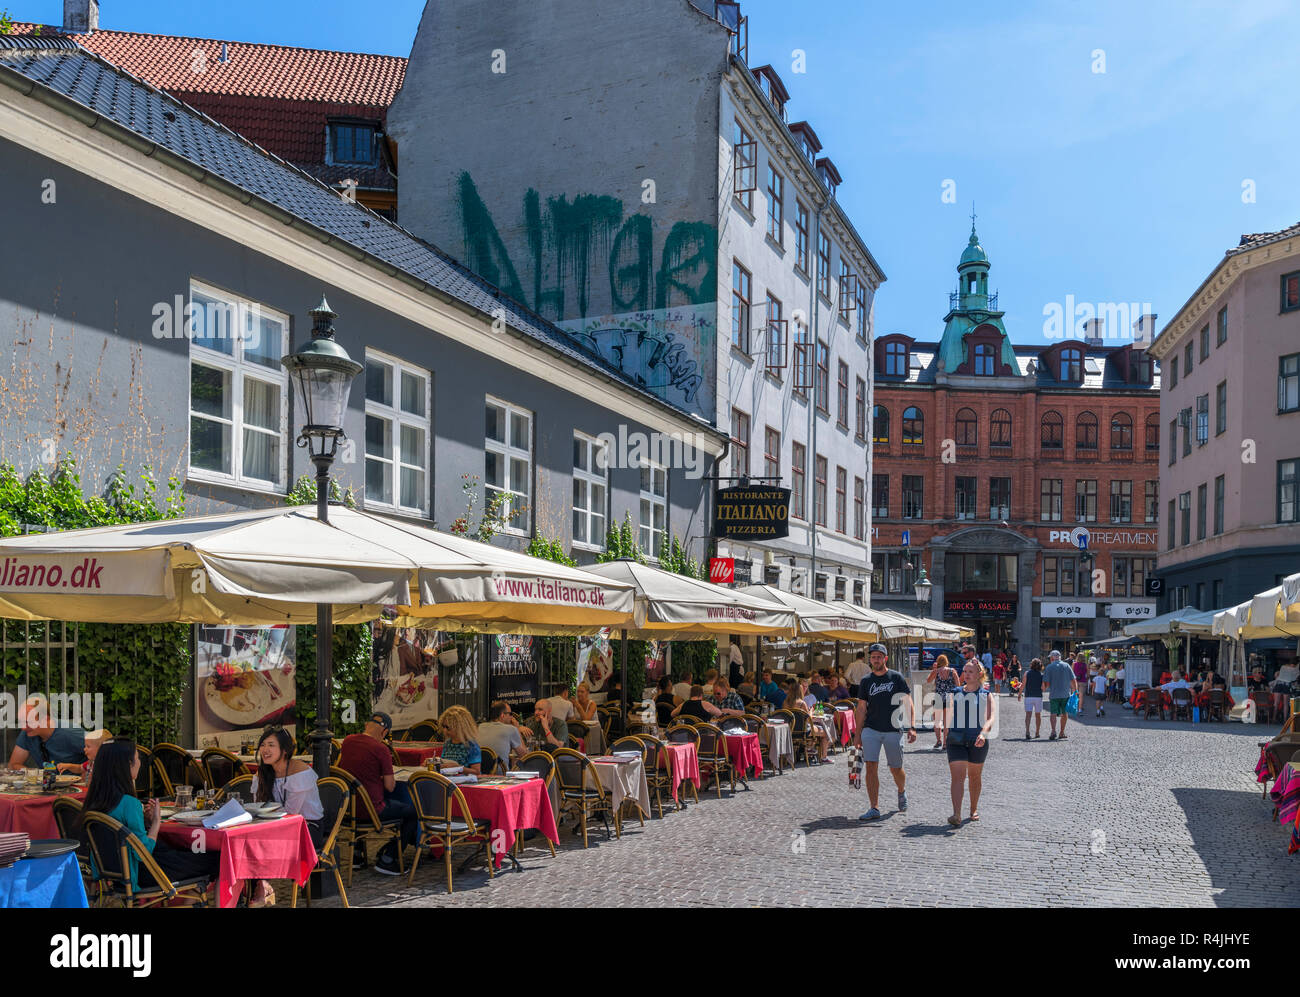 Cafes and restaurants on Fiolstræde in the Latin Quarter, Copenhagen, Zealand, Denmark Stock Photo